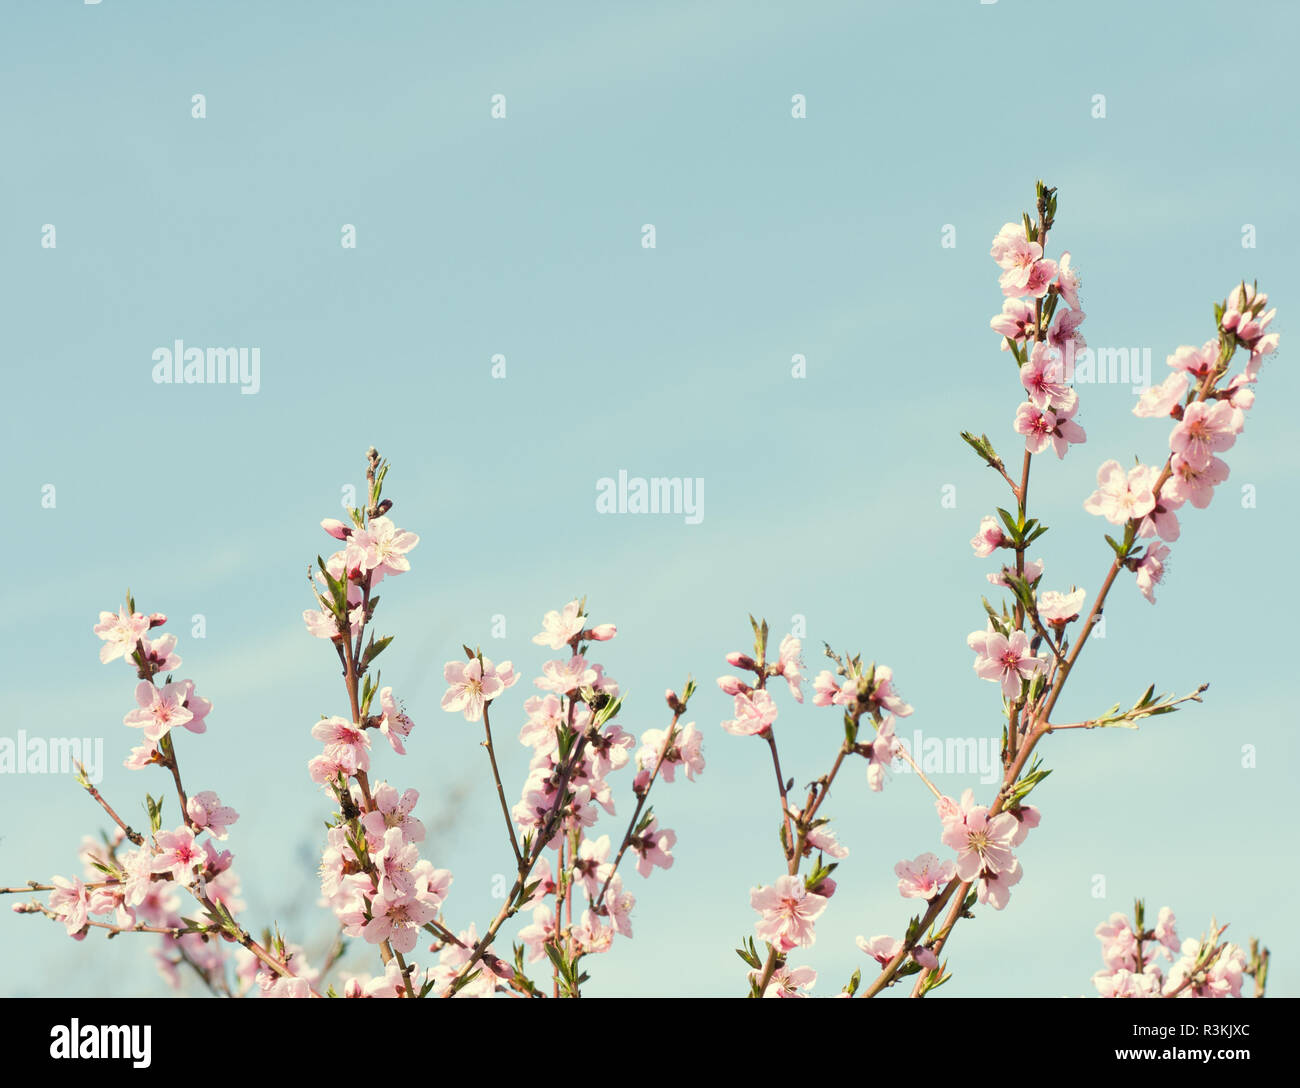 Zweige mit schönen rosa Blumen (Pfirsich) gegen den blauen Himmel. Selektive konzentrieren. Getönten Bild. Stockfoto